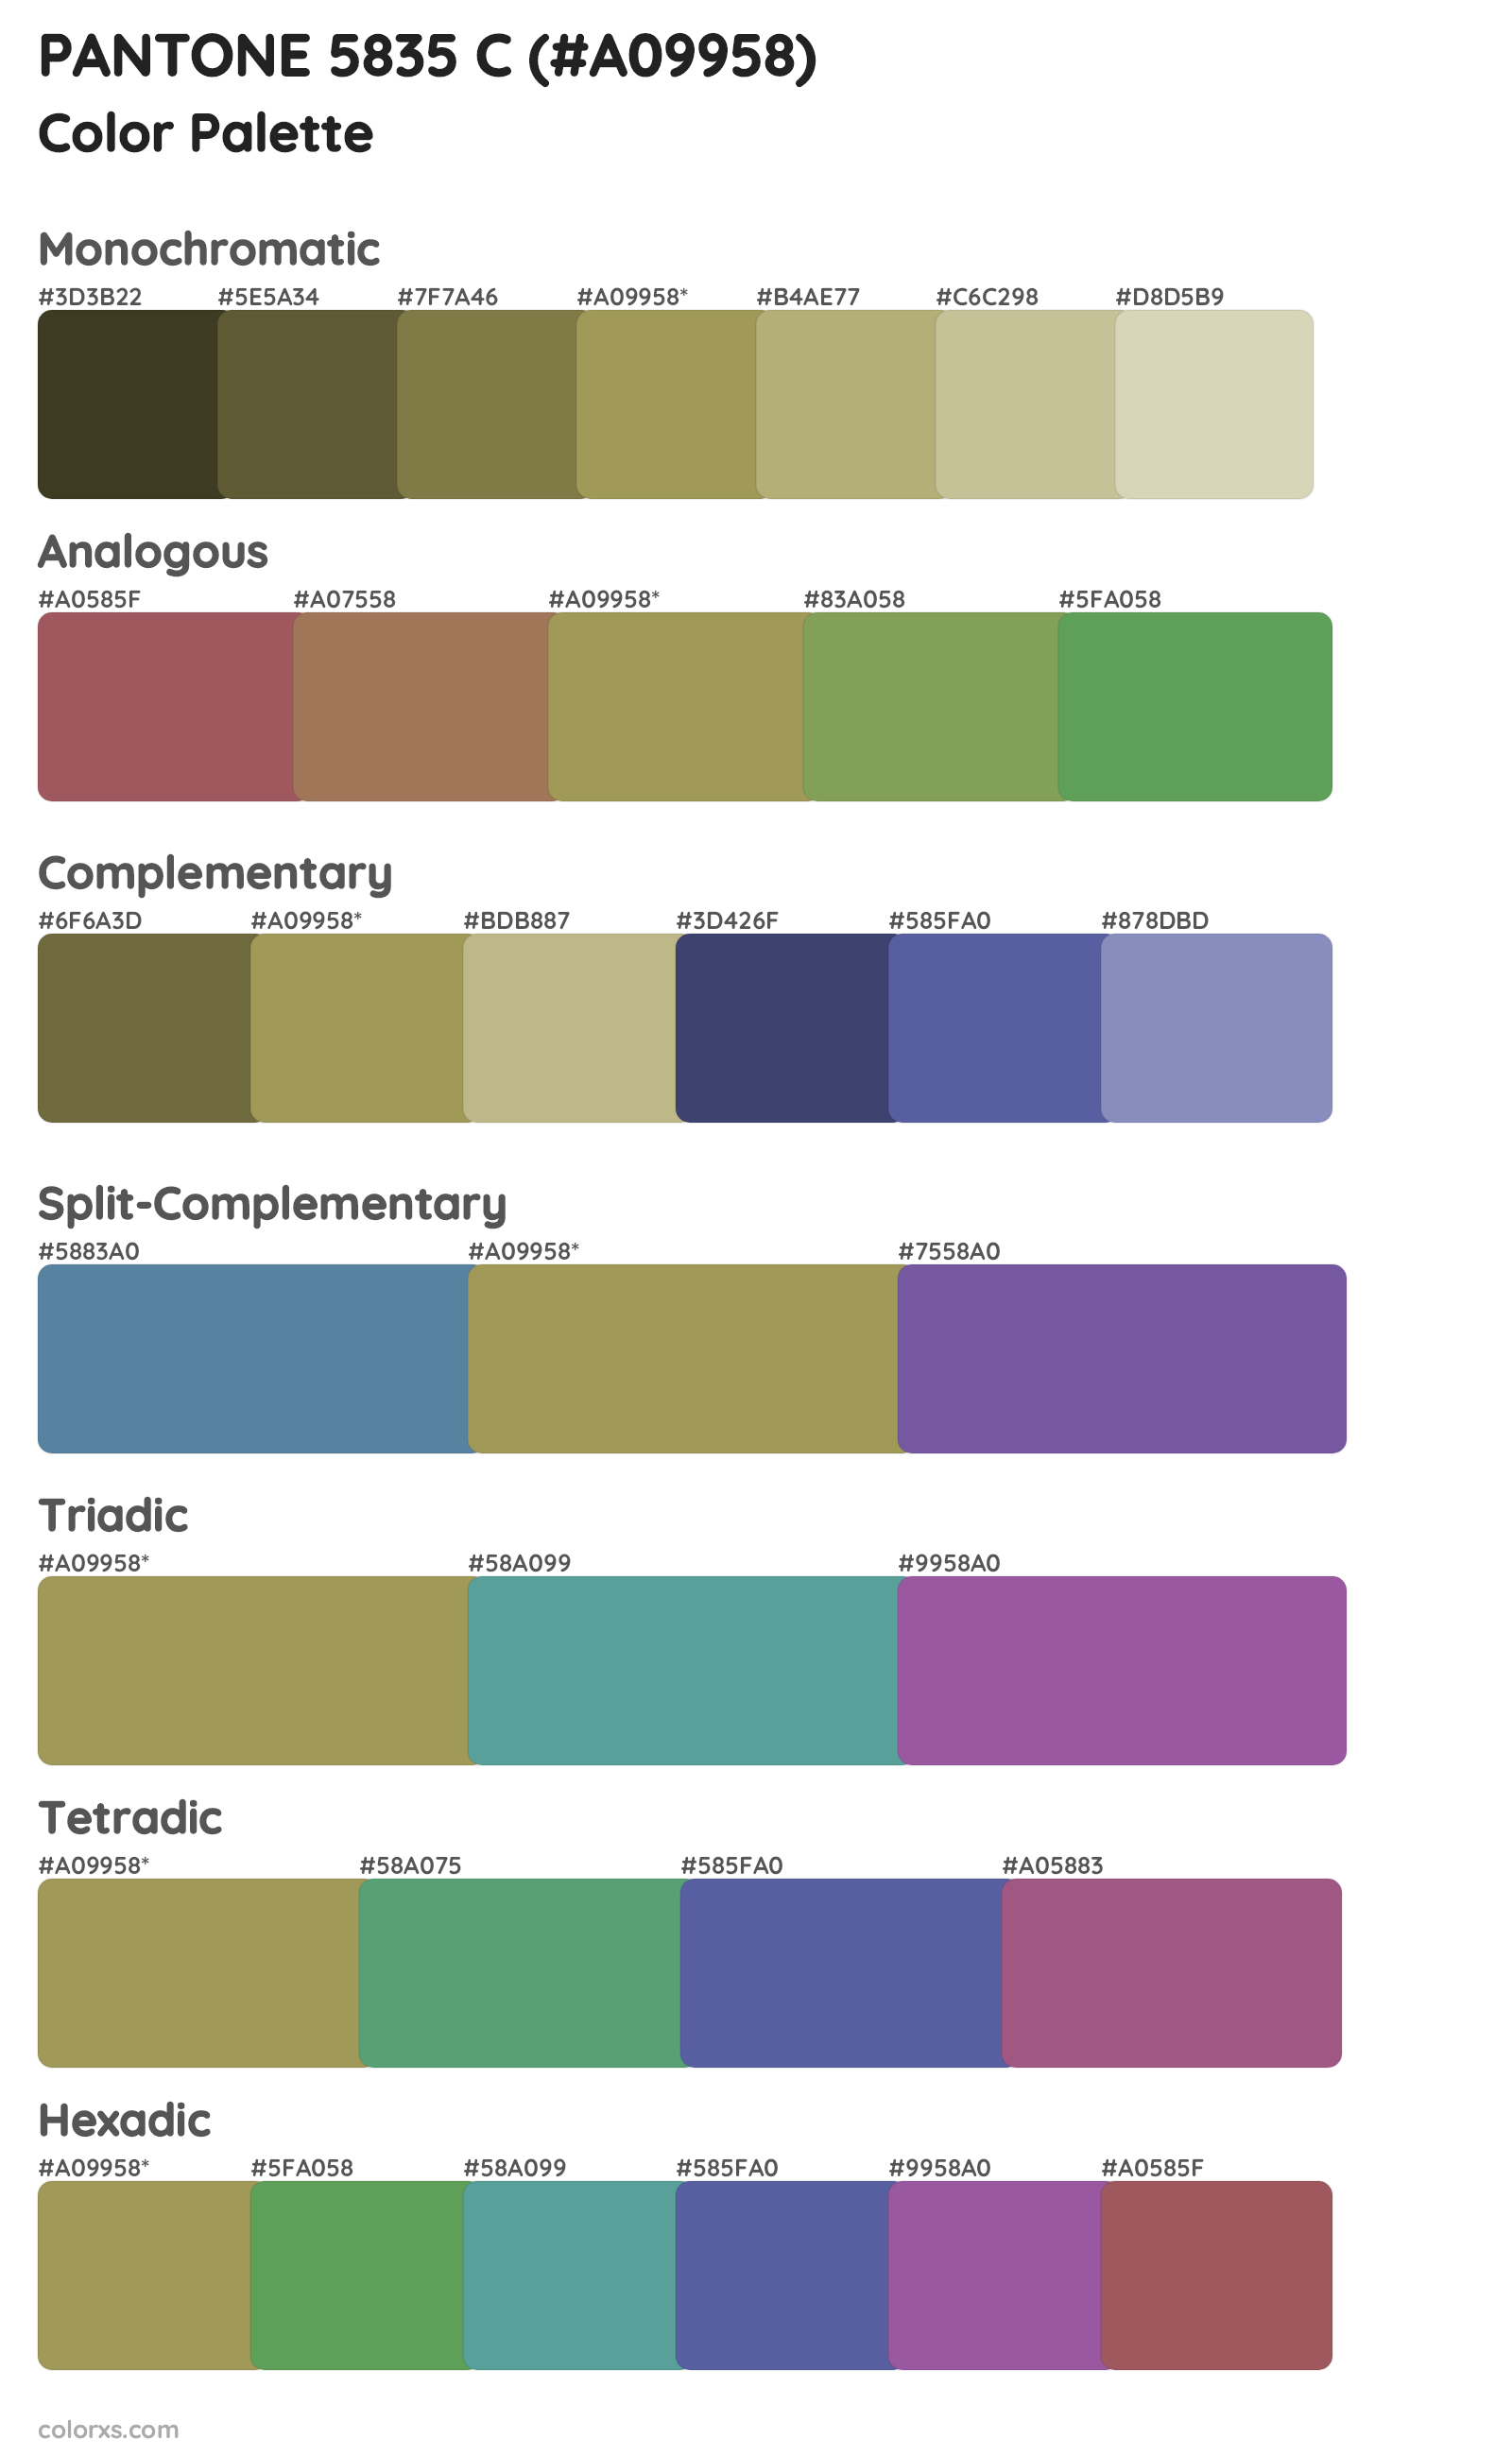 PANTONE 5835 C Color Scheme Palettes